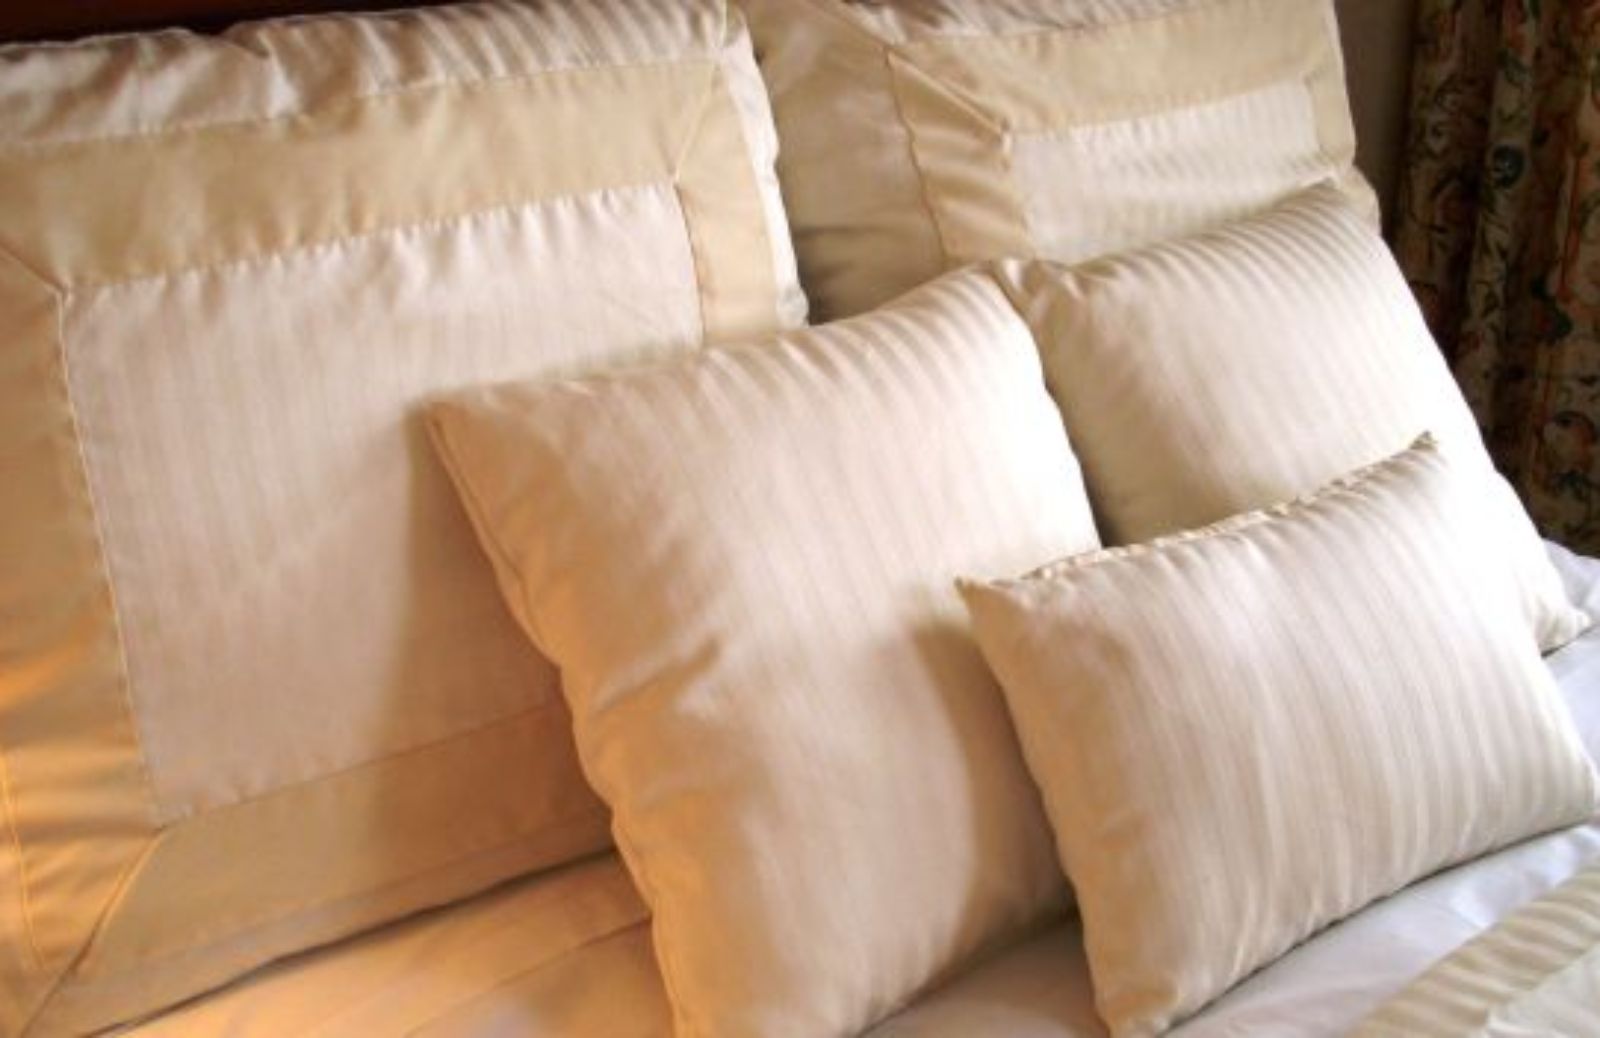 Come creare un cuscino anti cervicale 100% naturale